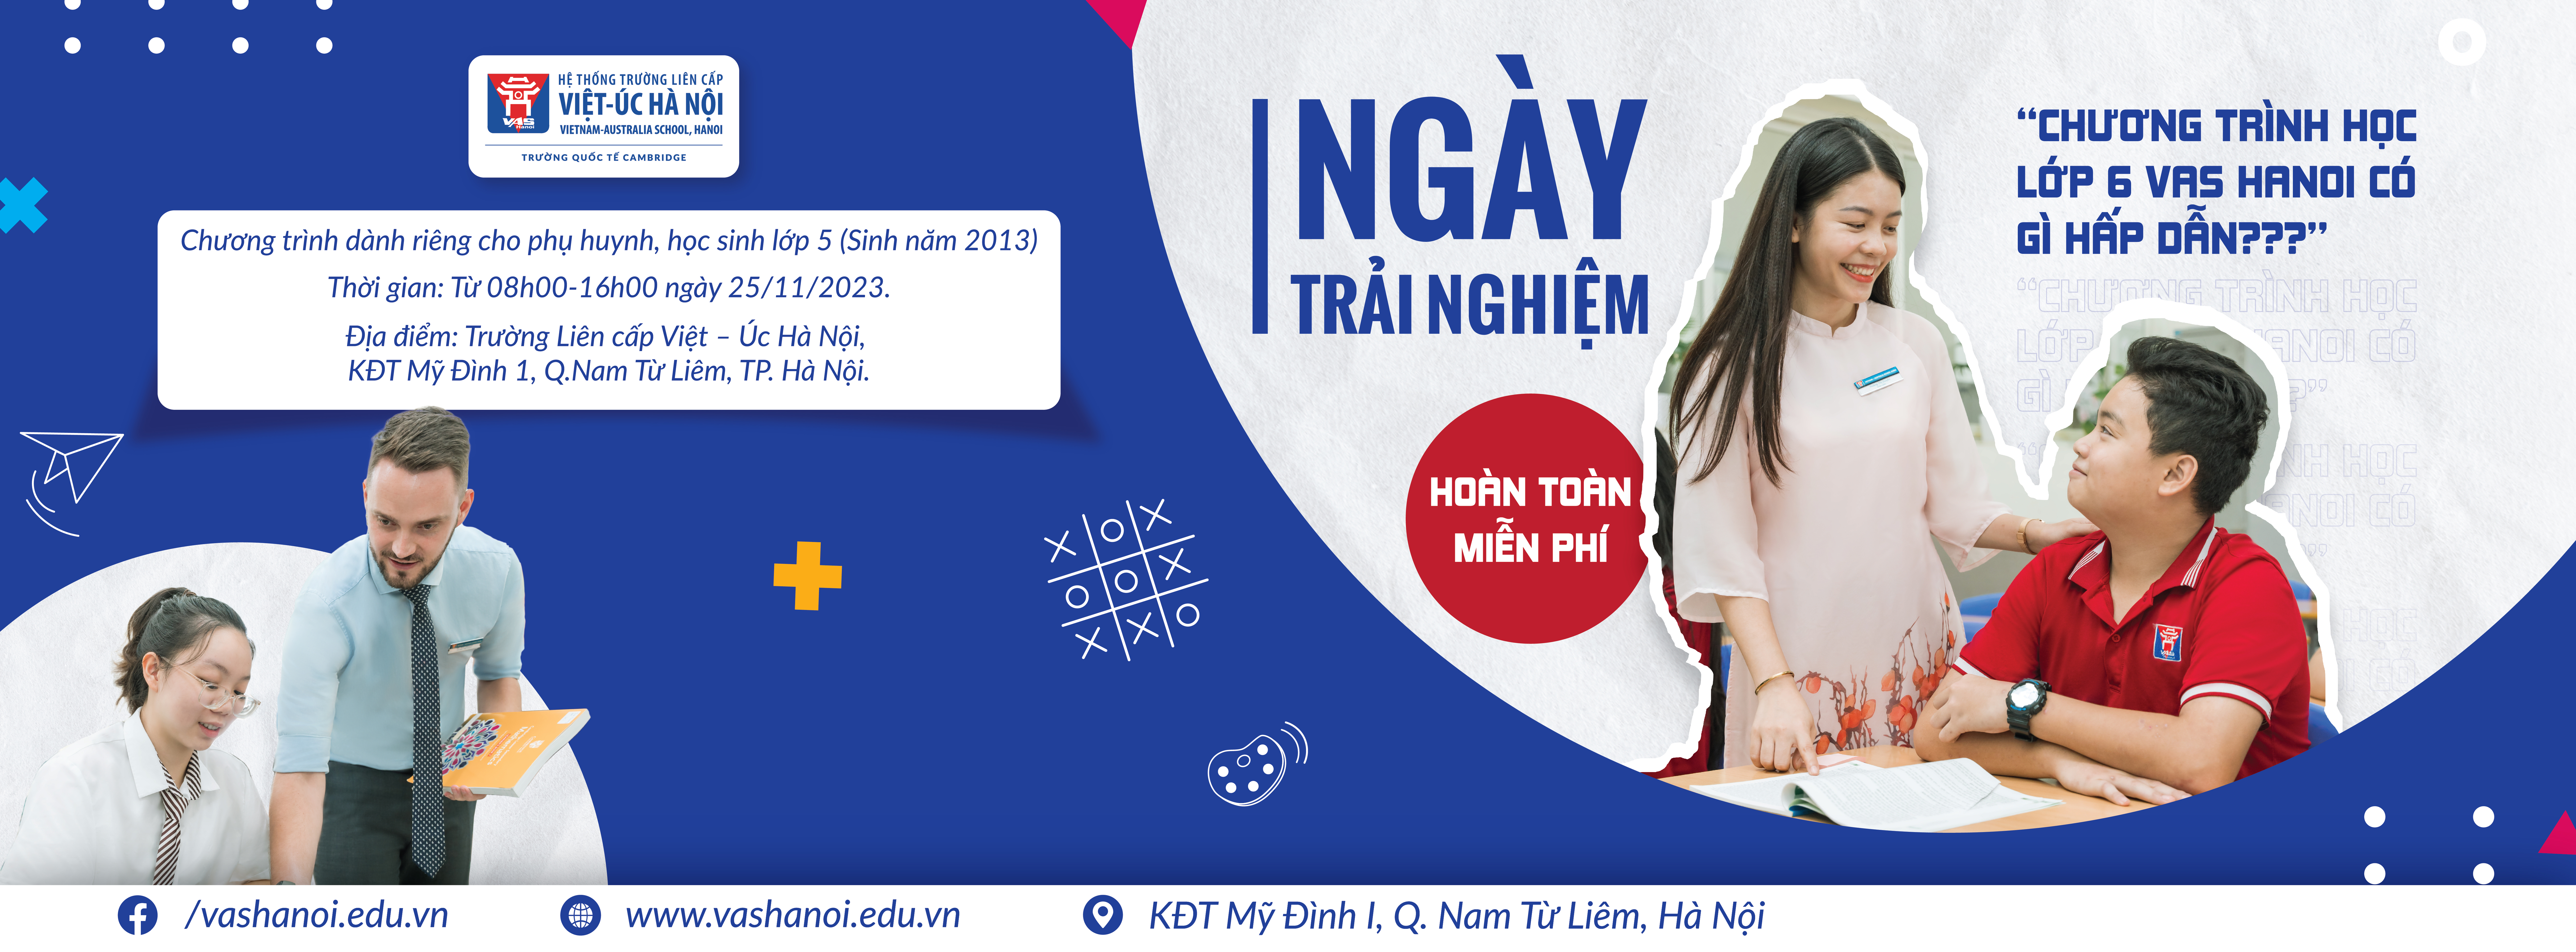 Trường Quốc tế Việt-Úc Hà Nội (Tiểu học, THCS, THPT) - VAS Hanoi